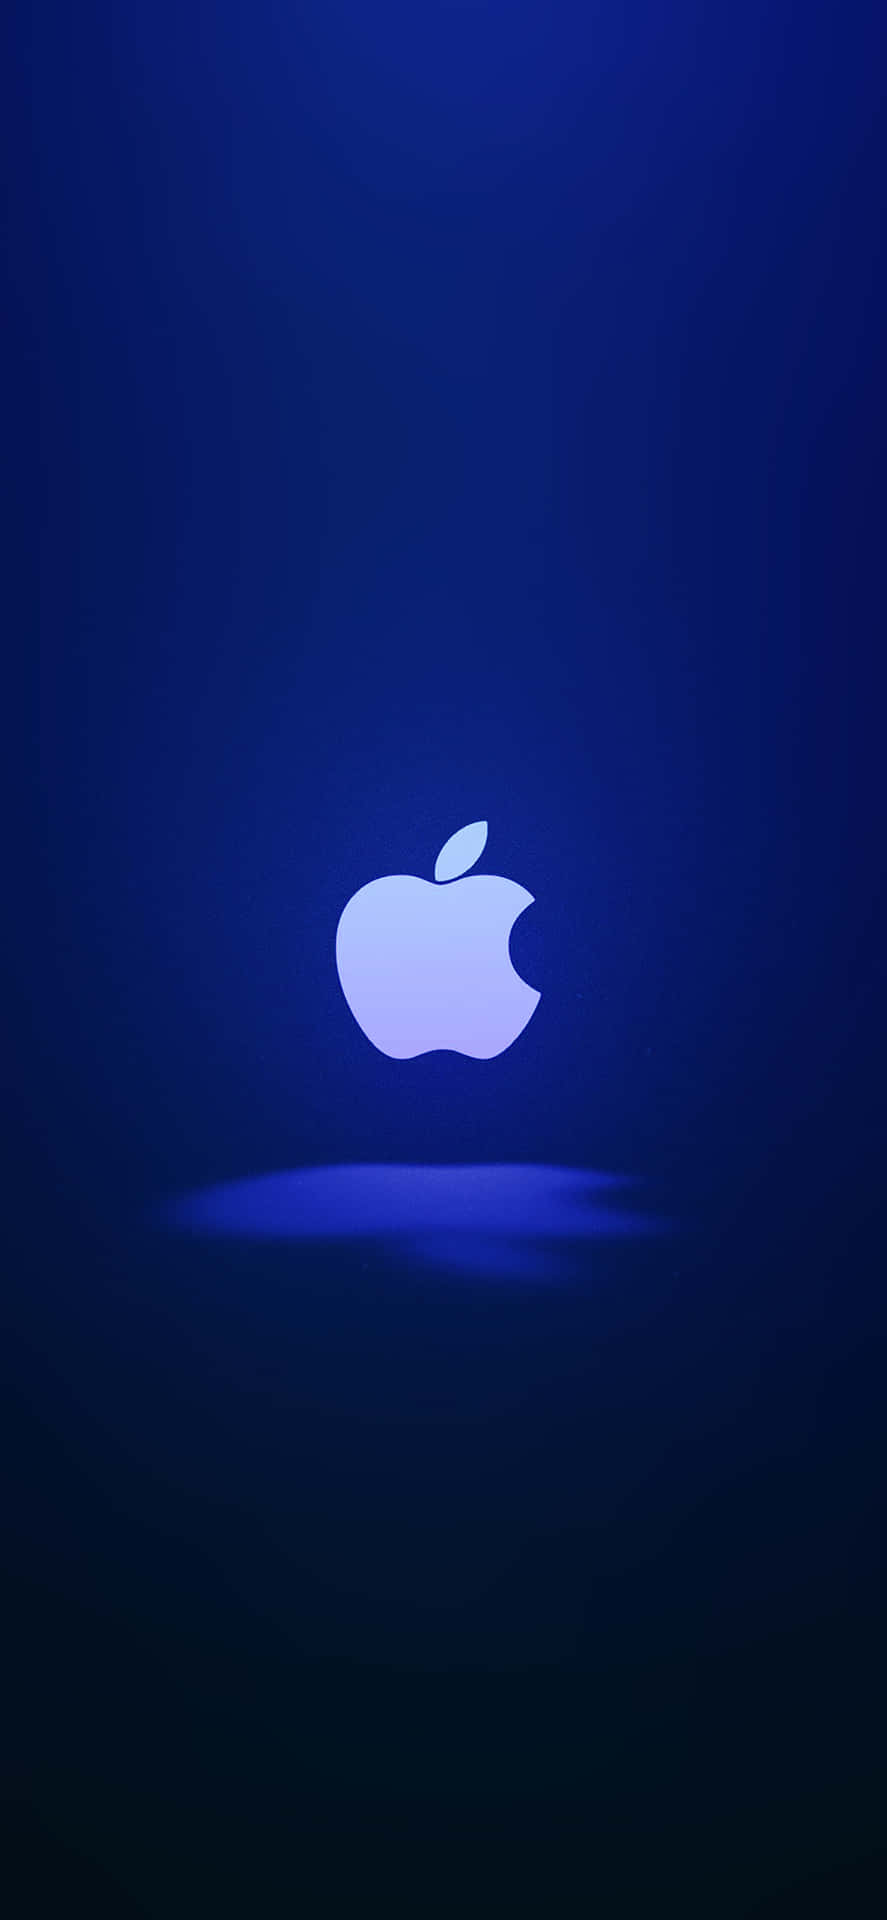 Detikoniska Äpple-logotypen På En Iphone X. Wallpaper